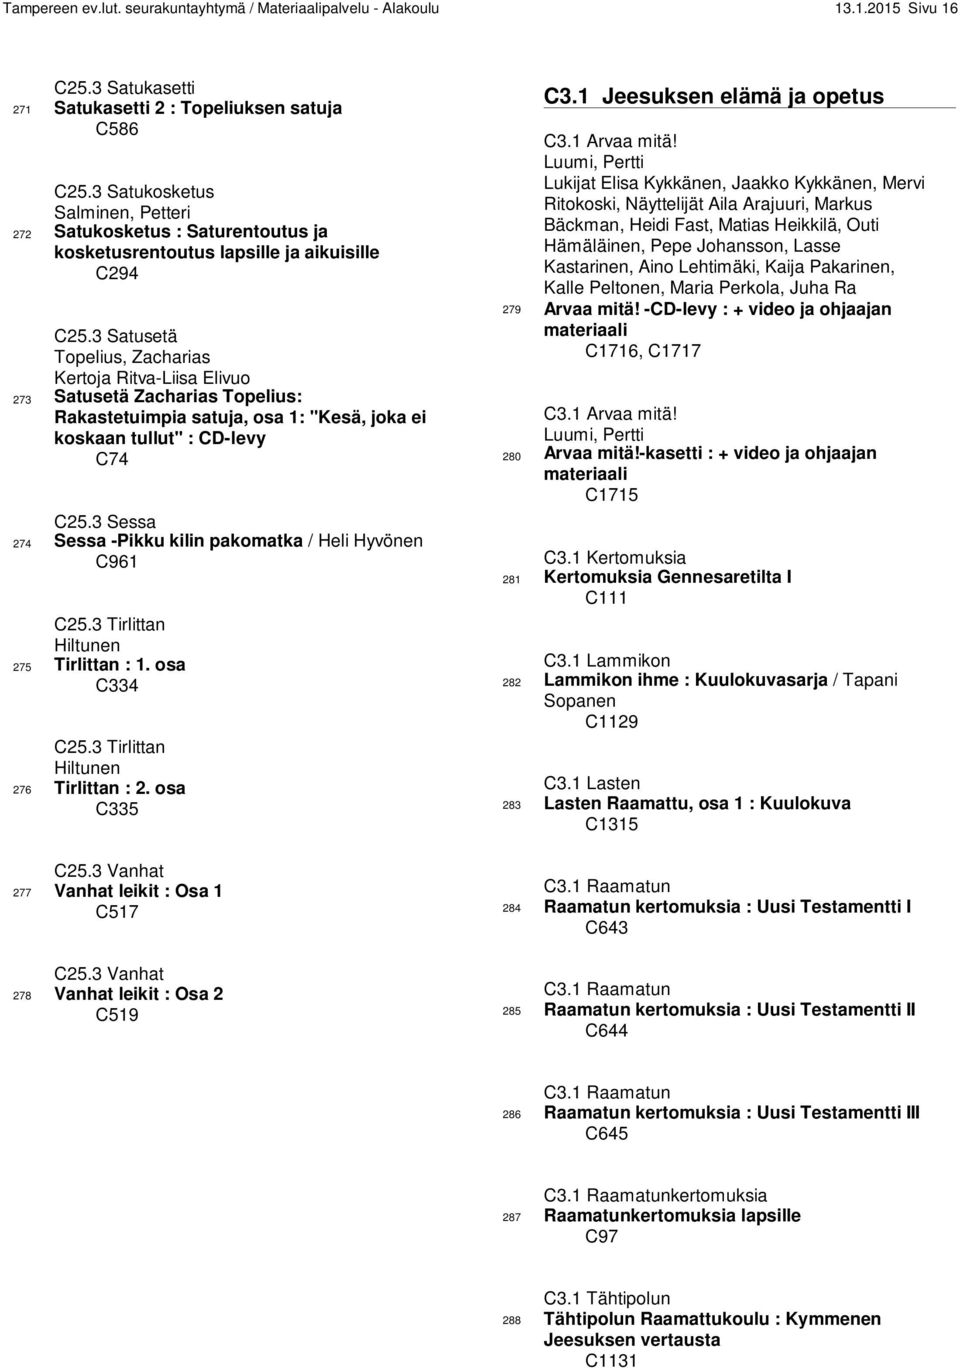 3 Satusetä Topelius, Zacharias Kertoja Ritva-Liisa Elivuo 273 Satusetä Zacharias Topelius: Rakastetuimpia satuja, osa 1: "Kesä, joka ei koskaan tullut" : CD-levy C74 C25.